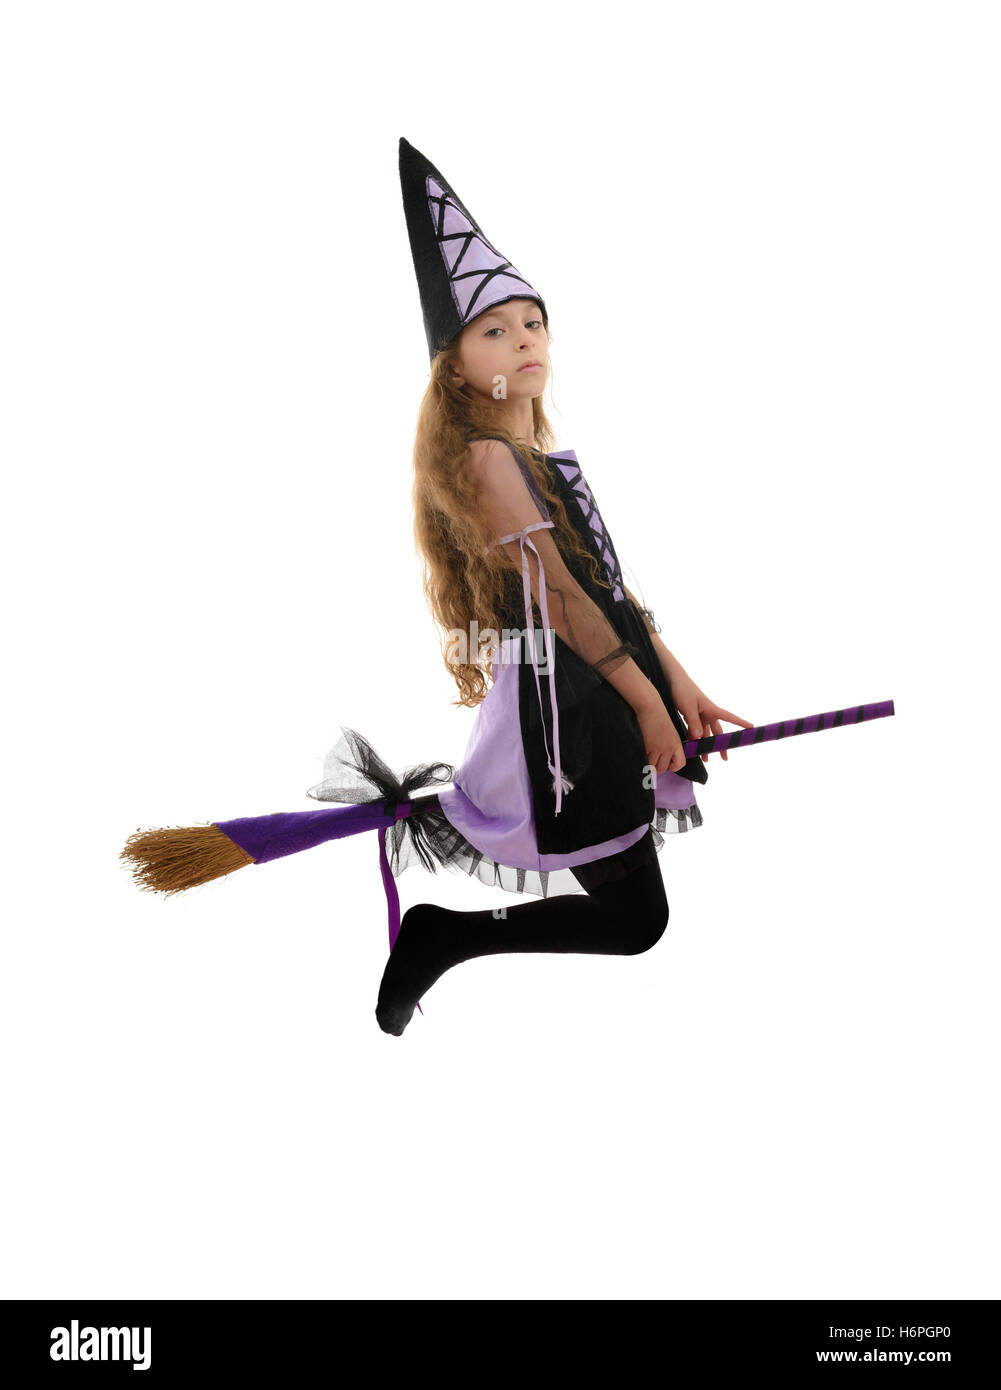 Schöne Hexe Mädchen fliegen mit Besen, Isolated on White Background  Stockfotografie - Alamy